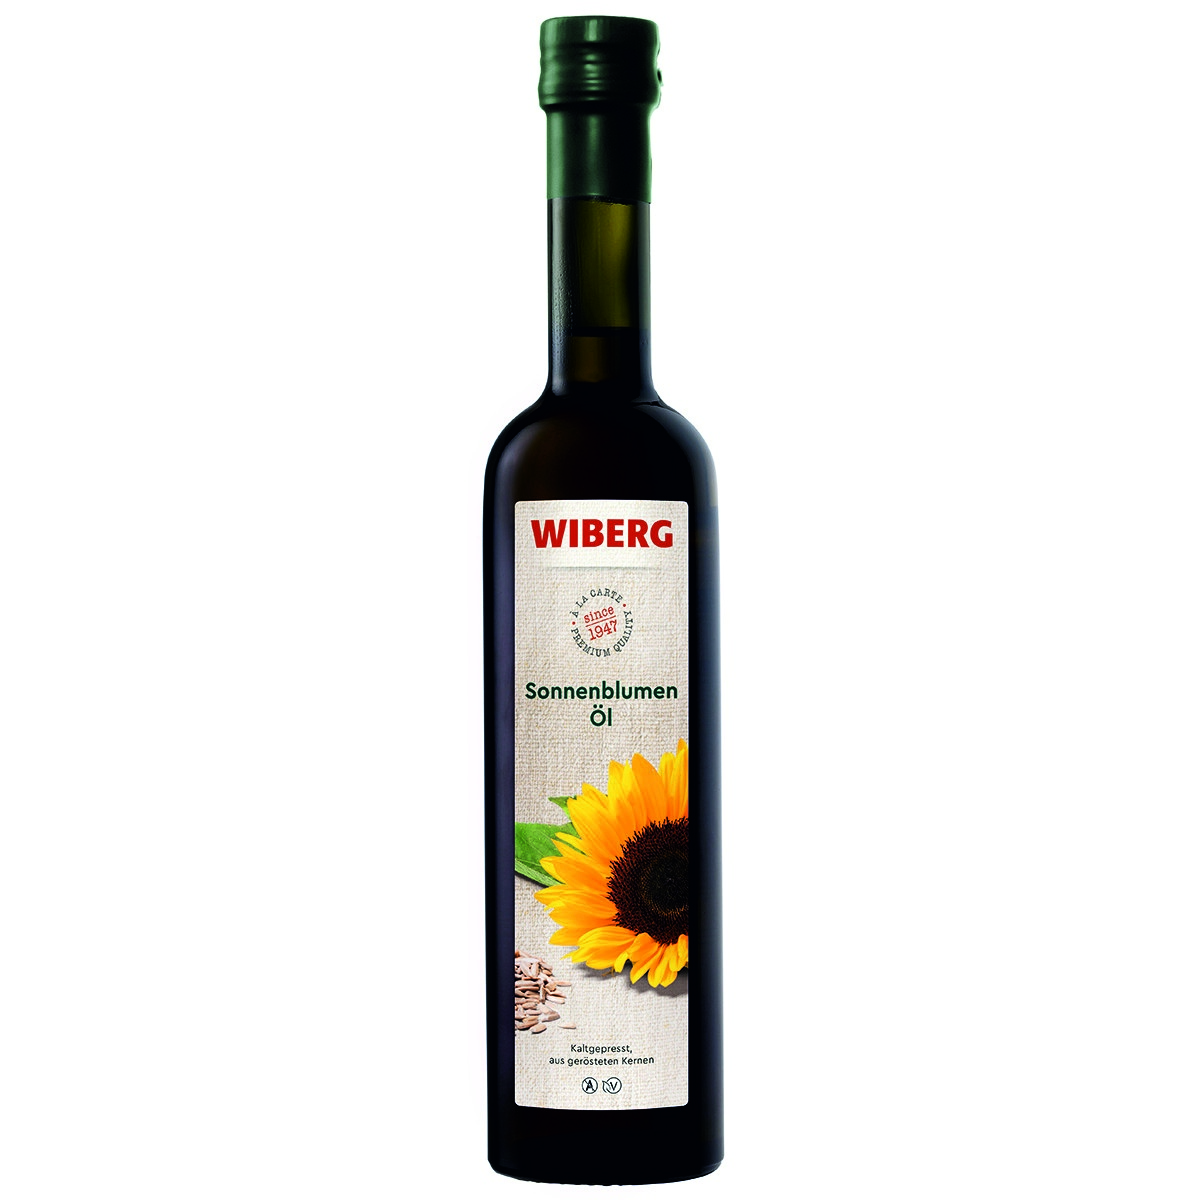 WIBERG Sonnenblumen-Öl